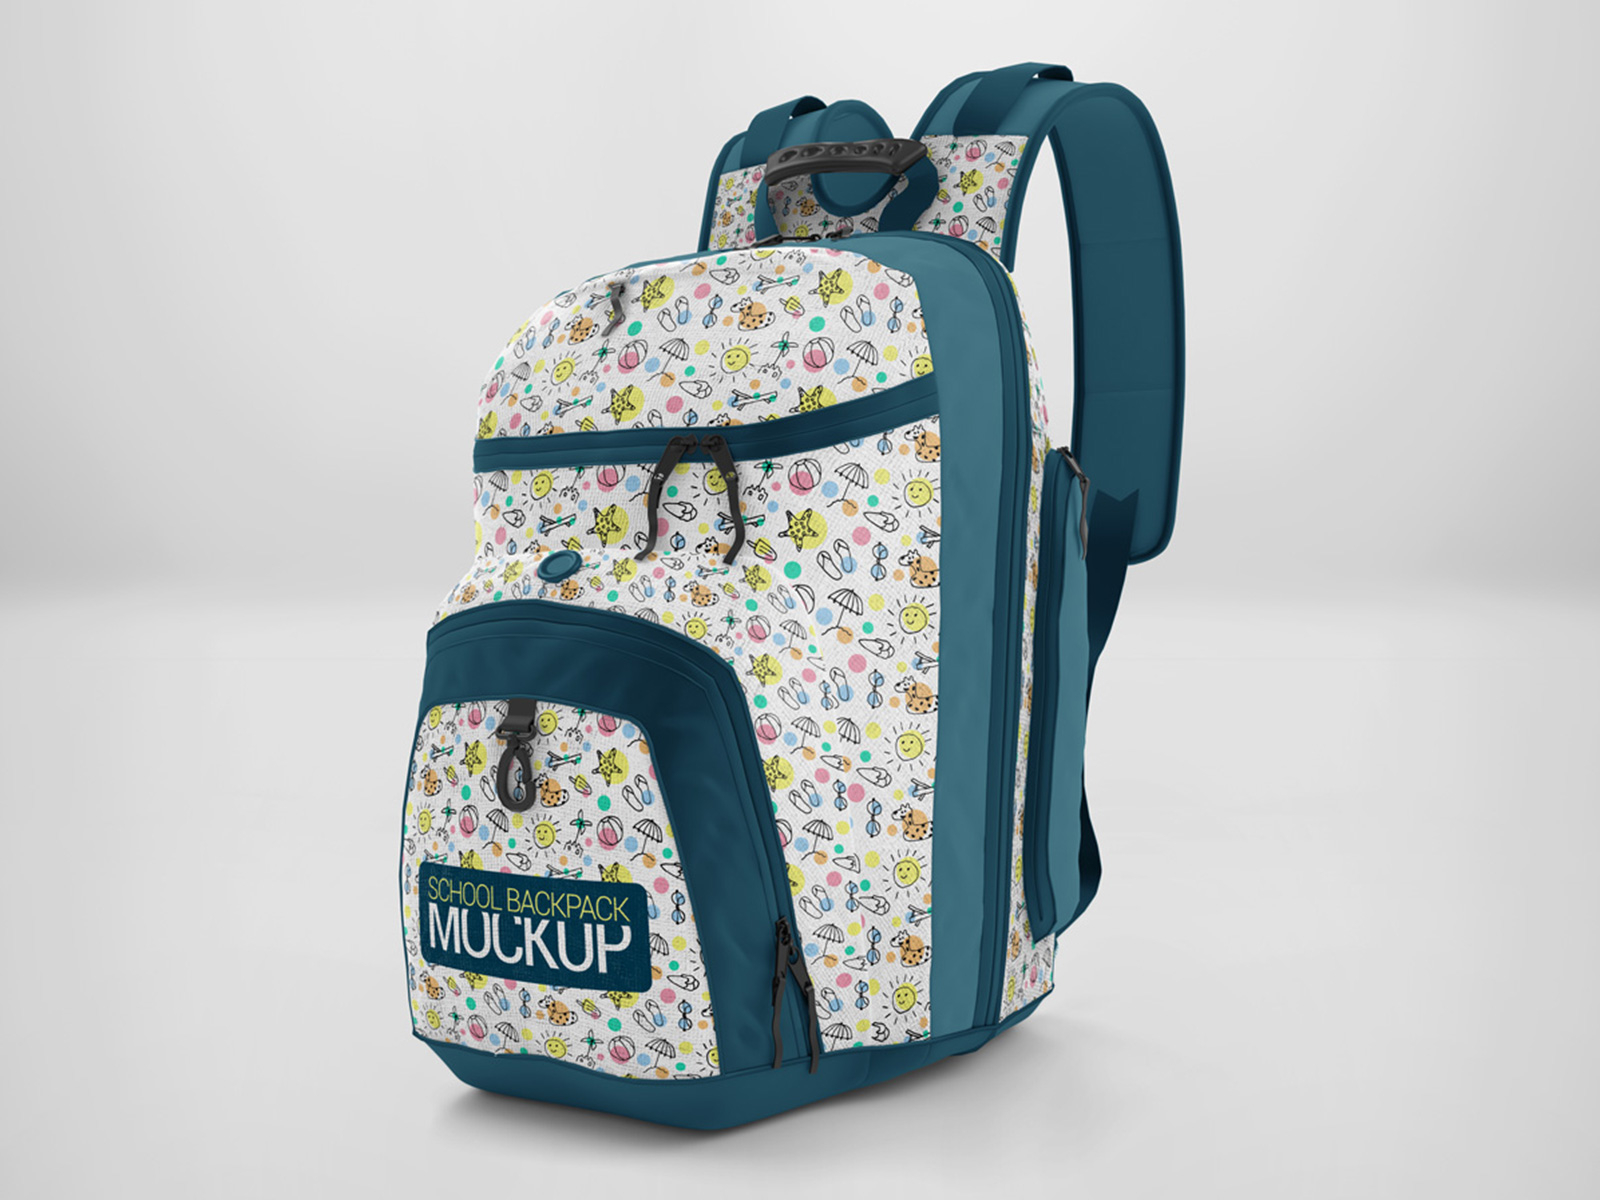 Download School Backpack Mockup By Mostafa Absalan On Dribbble 3D SVG Files Ideas | SVG, Paper Crafts, SVG File